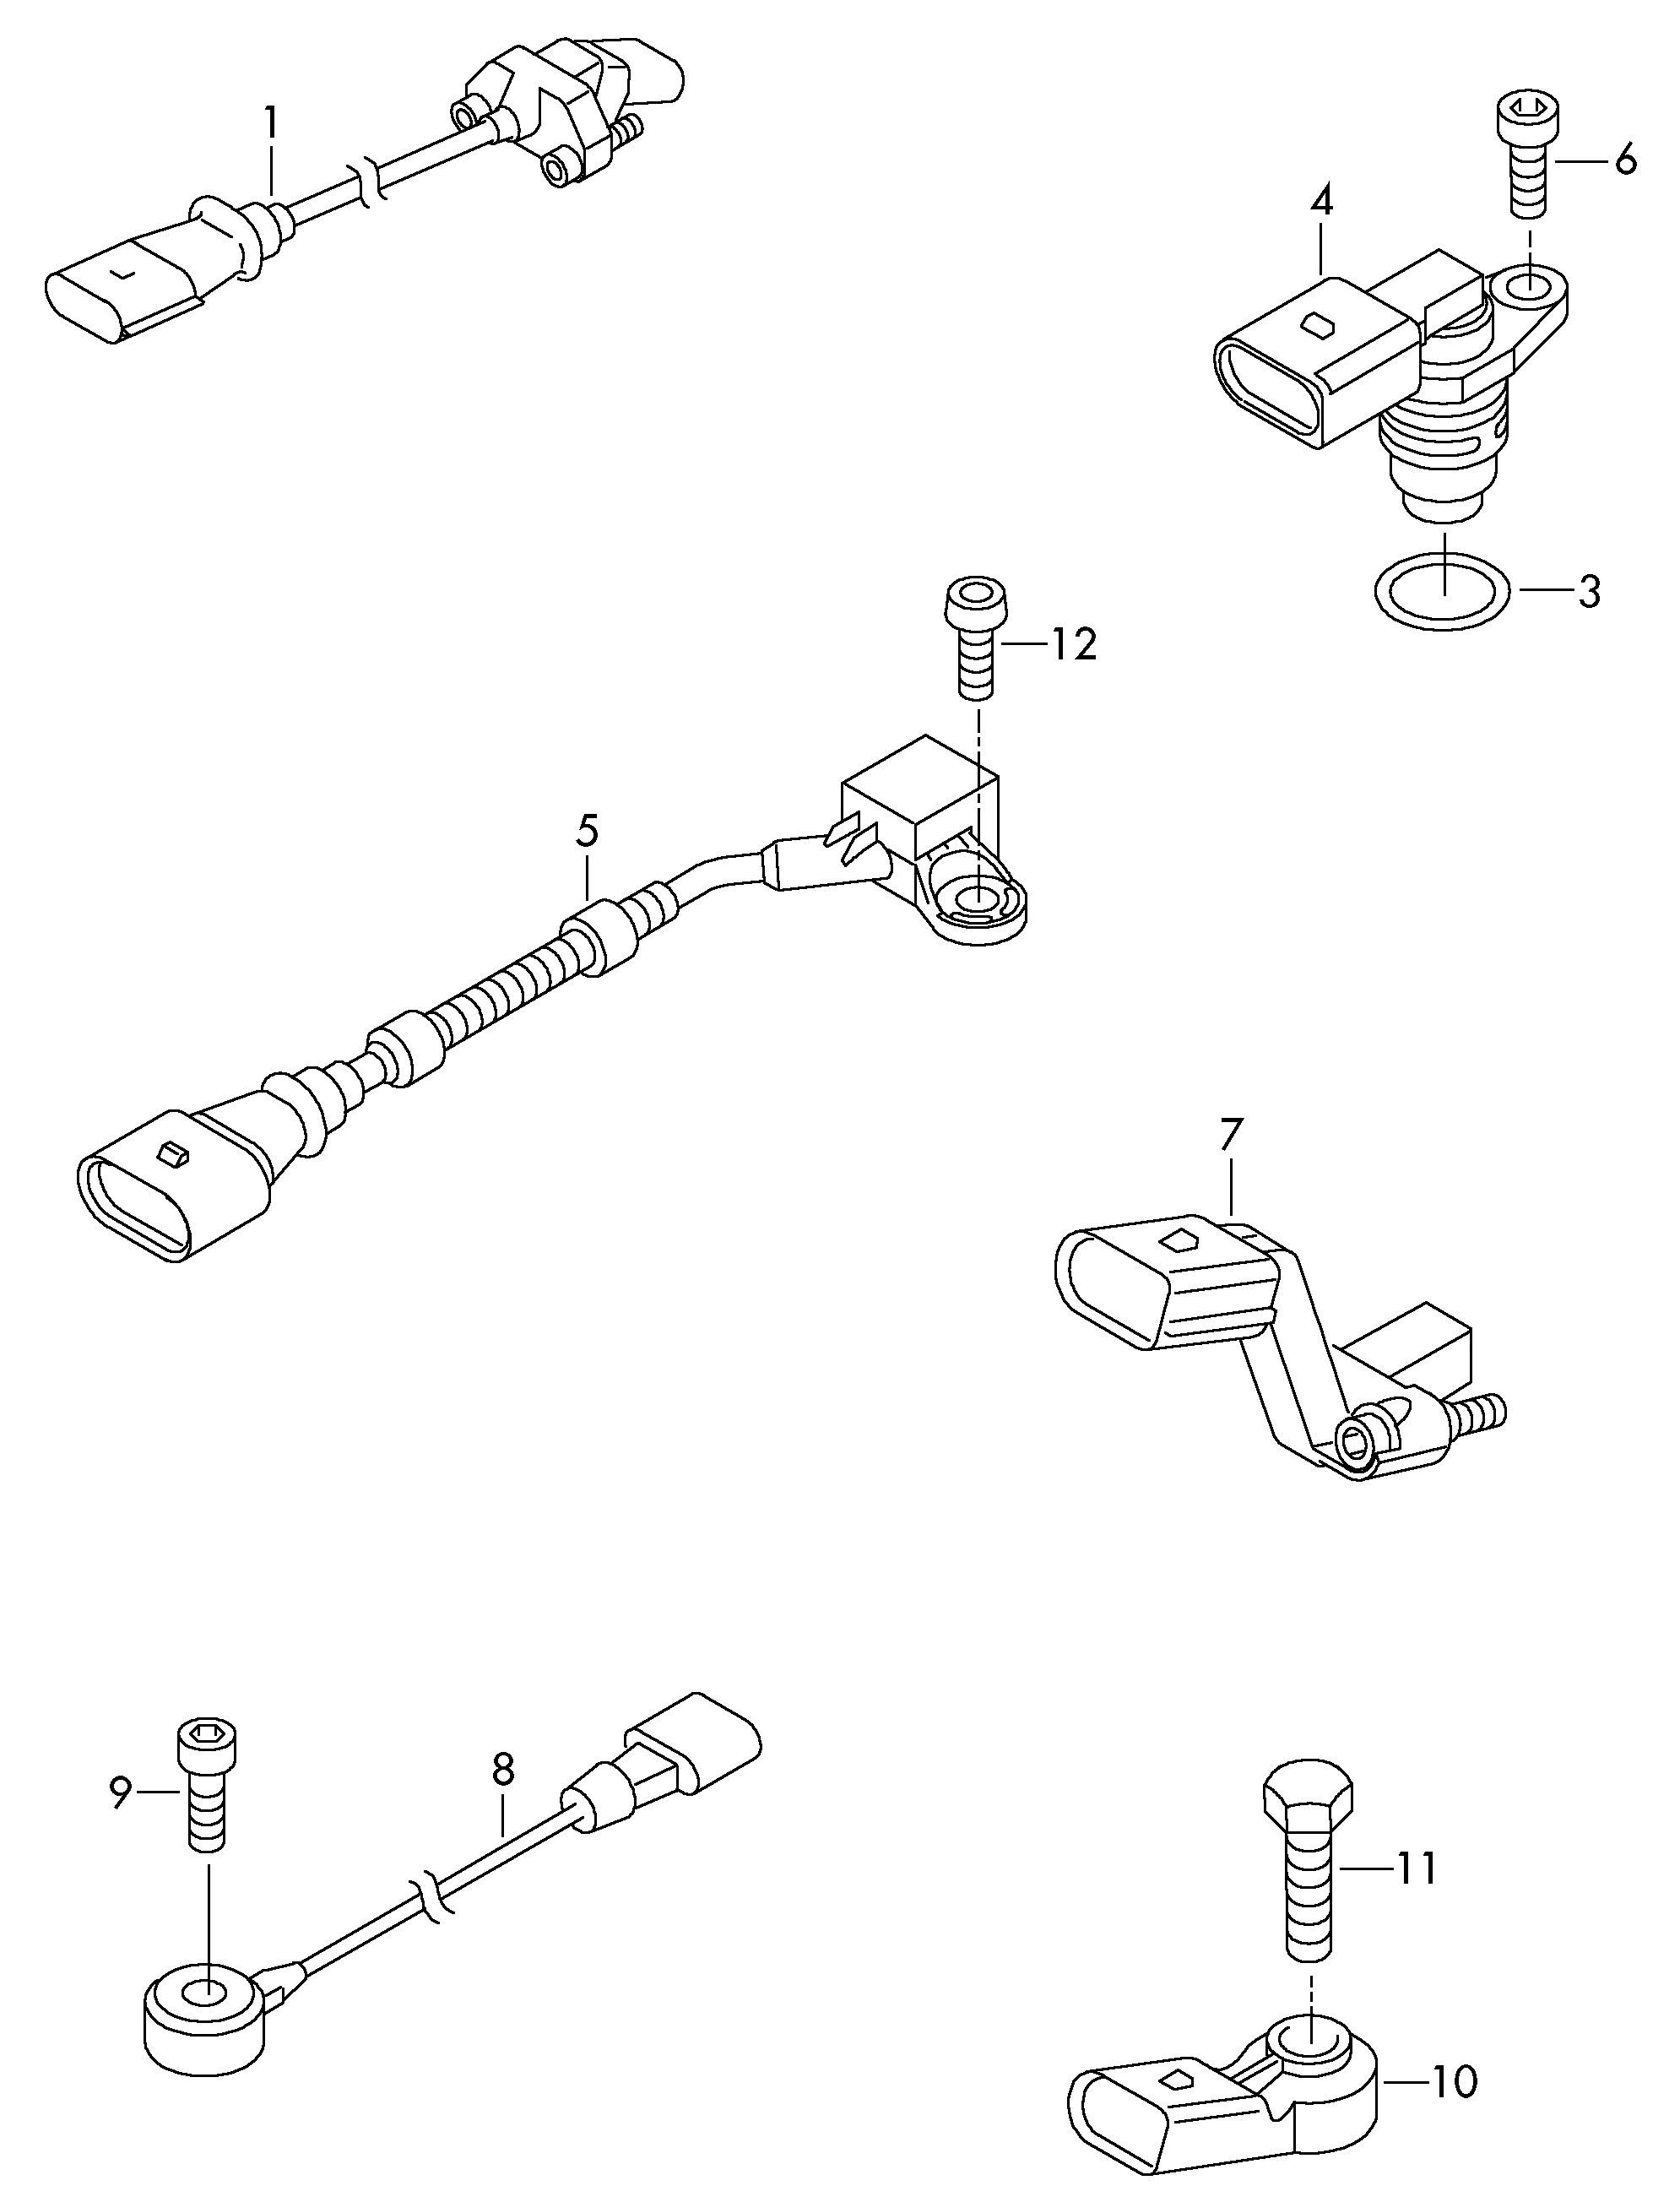 Sinyal sensörü; Vuruntu sensörü; Kumanda valfi - Tiguan(TIG)  